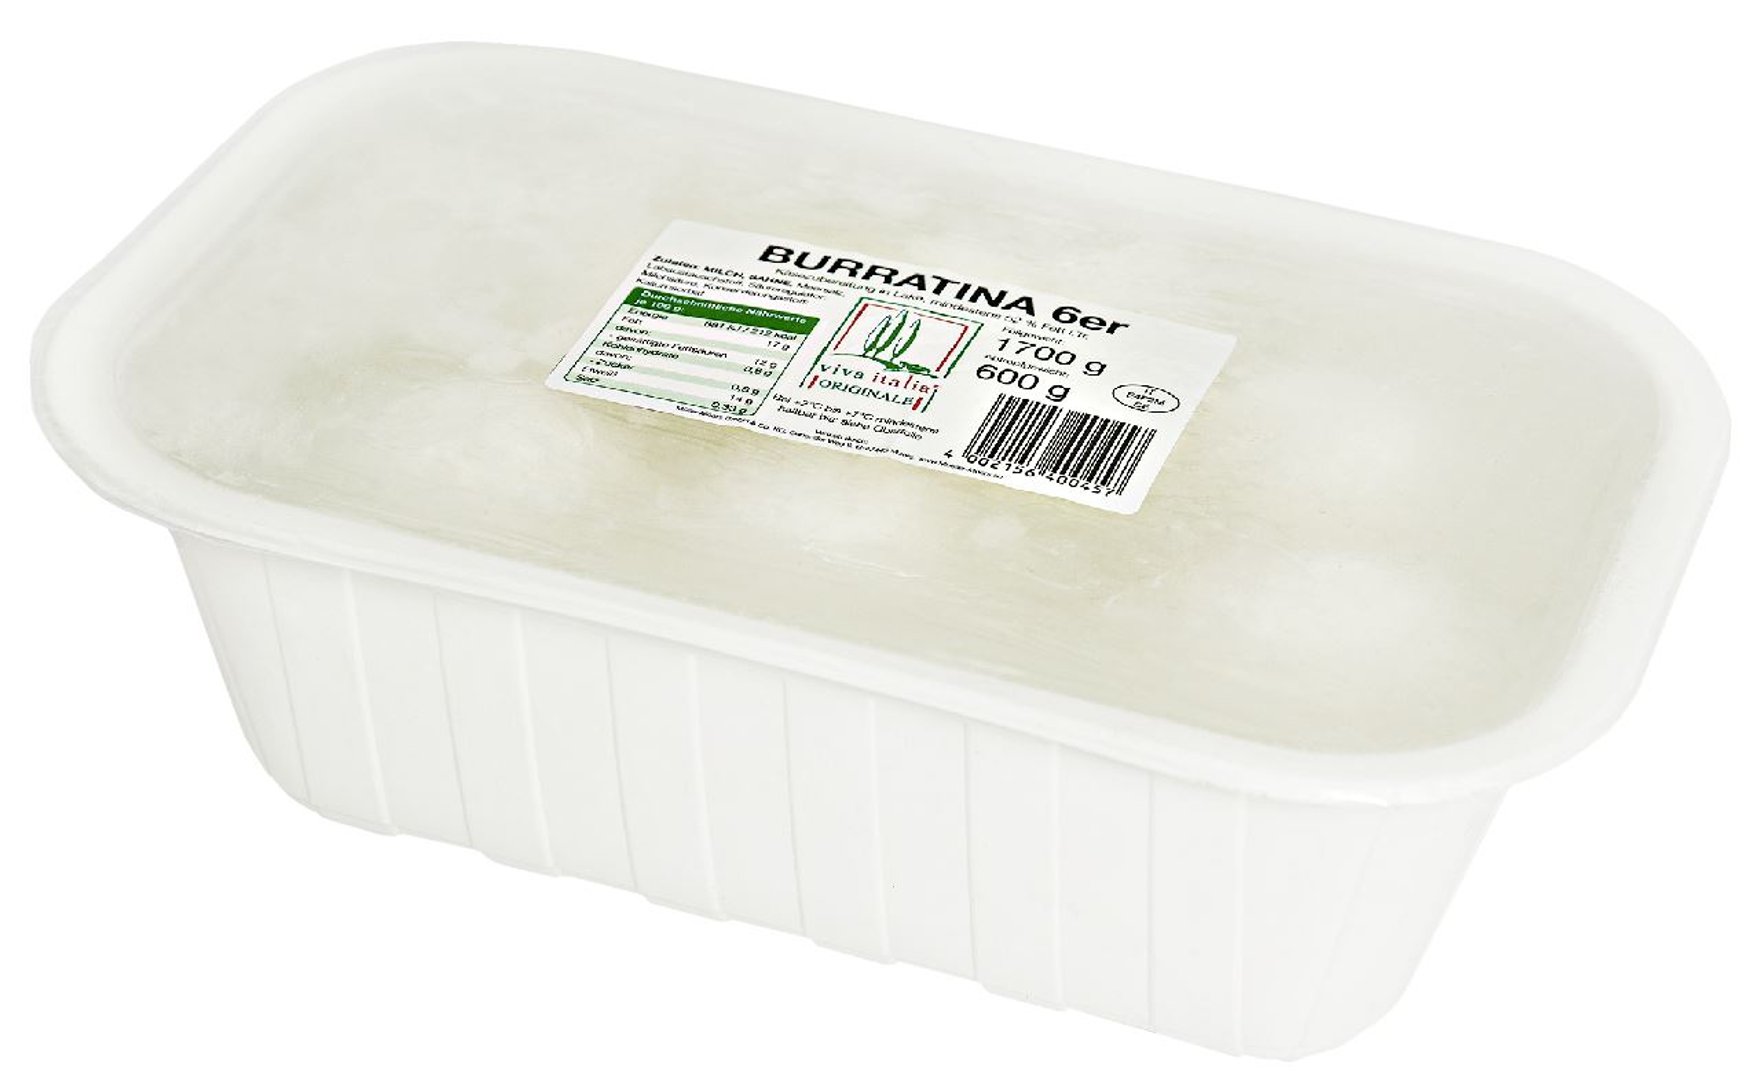 viva italia - Burratina min. 52 % Fett i.Tr., 6 Stück à ca. 100 g - 600 g Stück